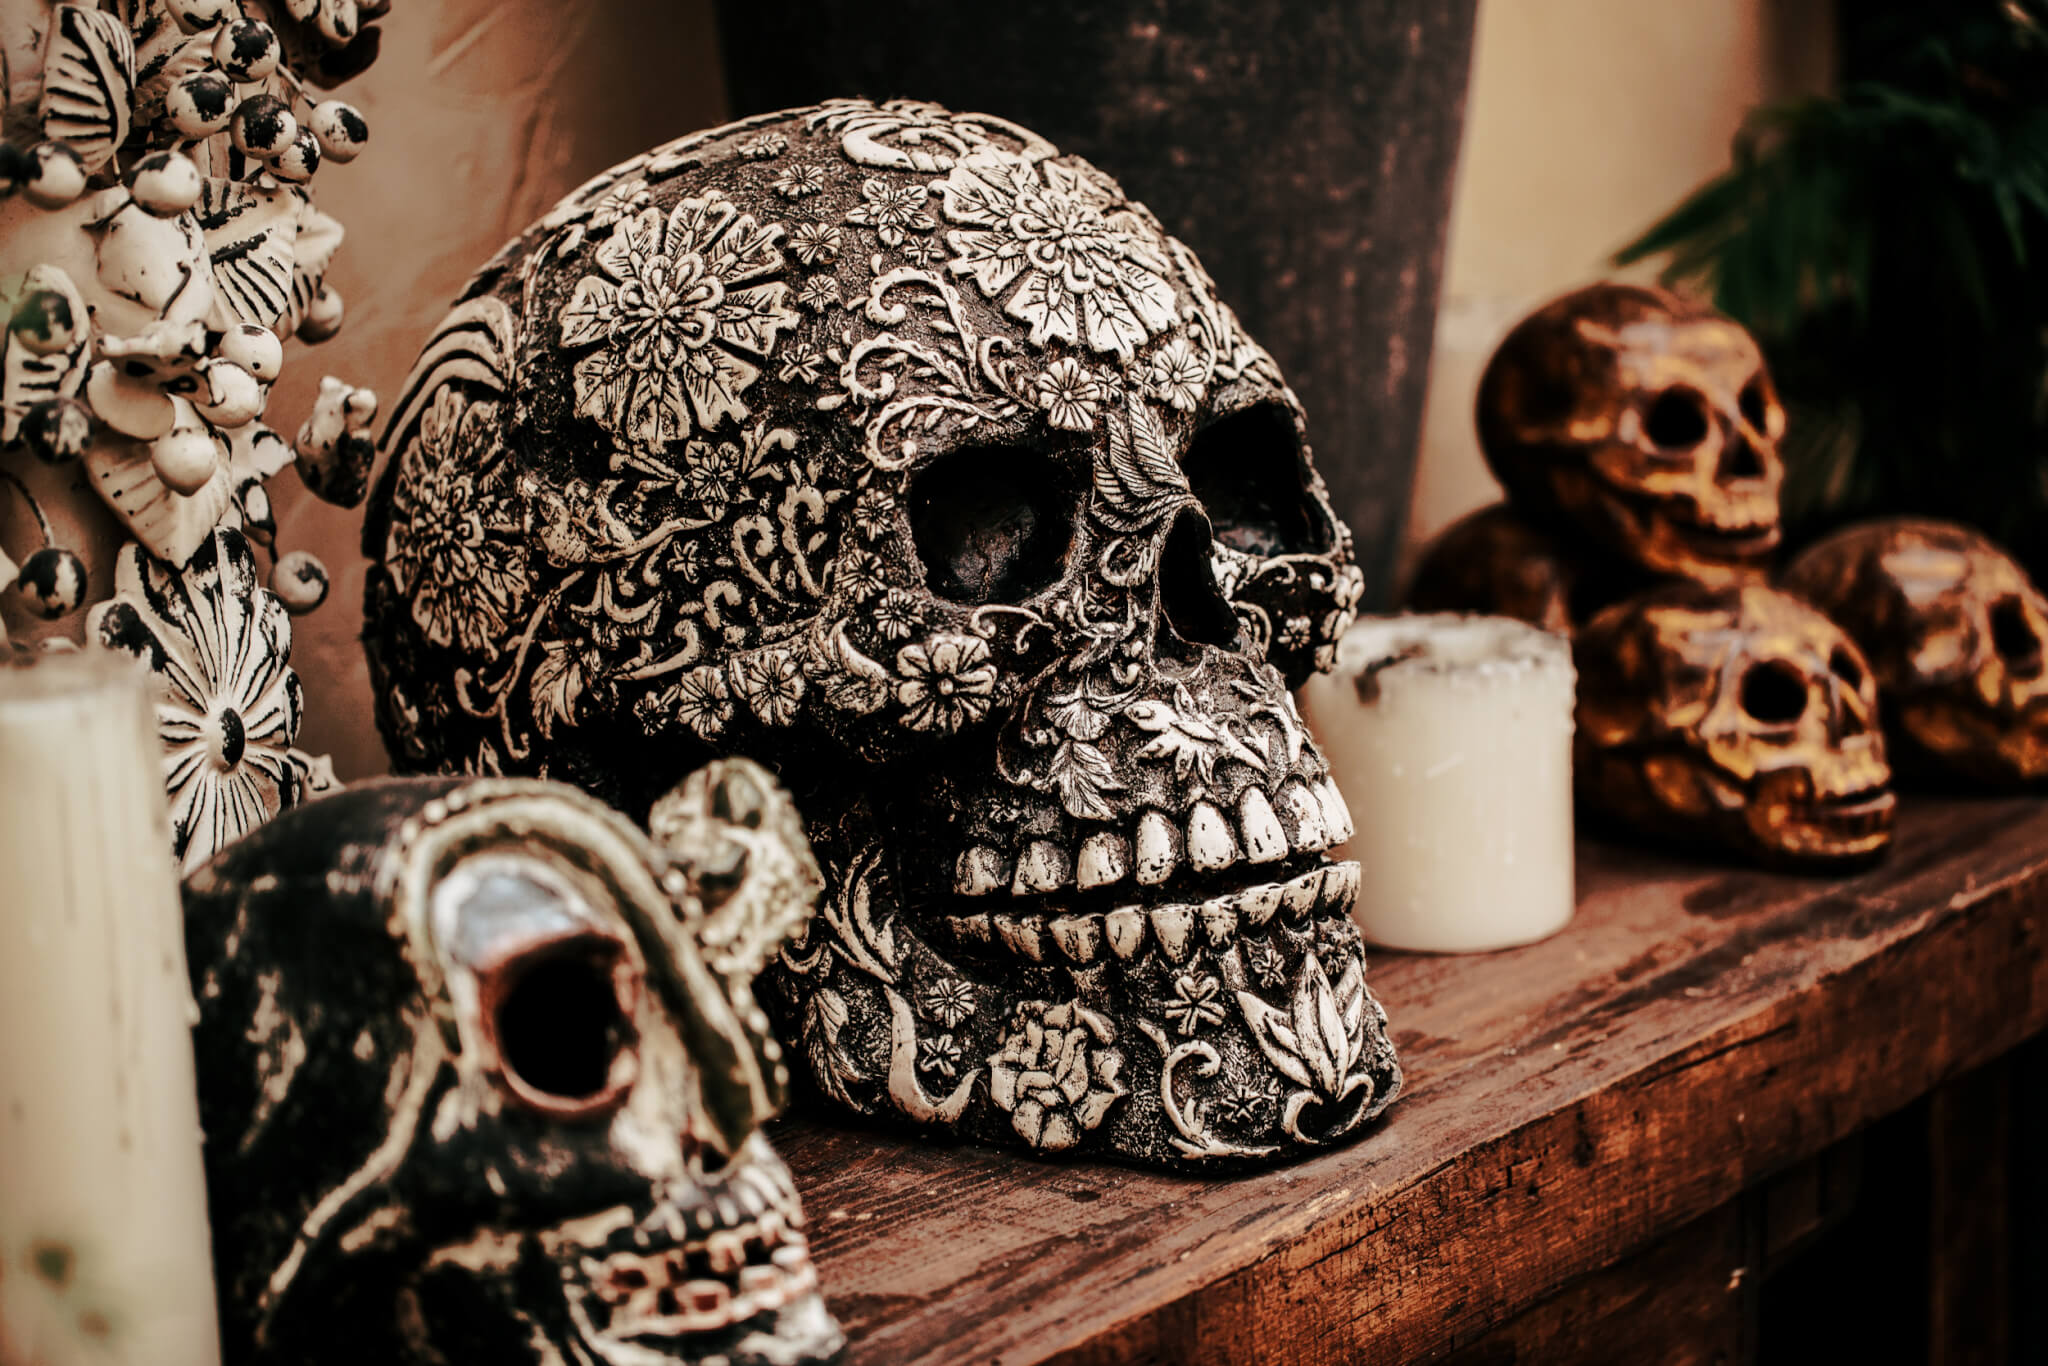 Calavera Skull with Candles